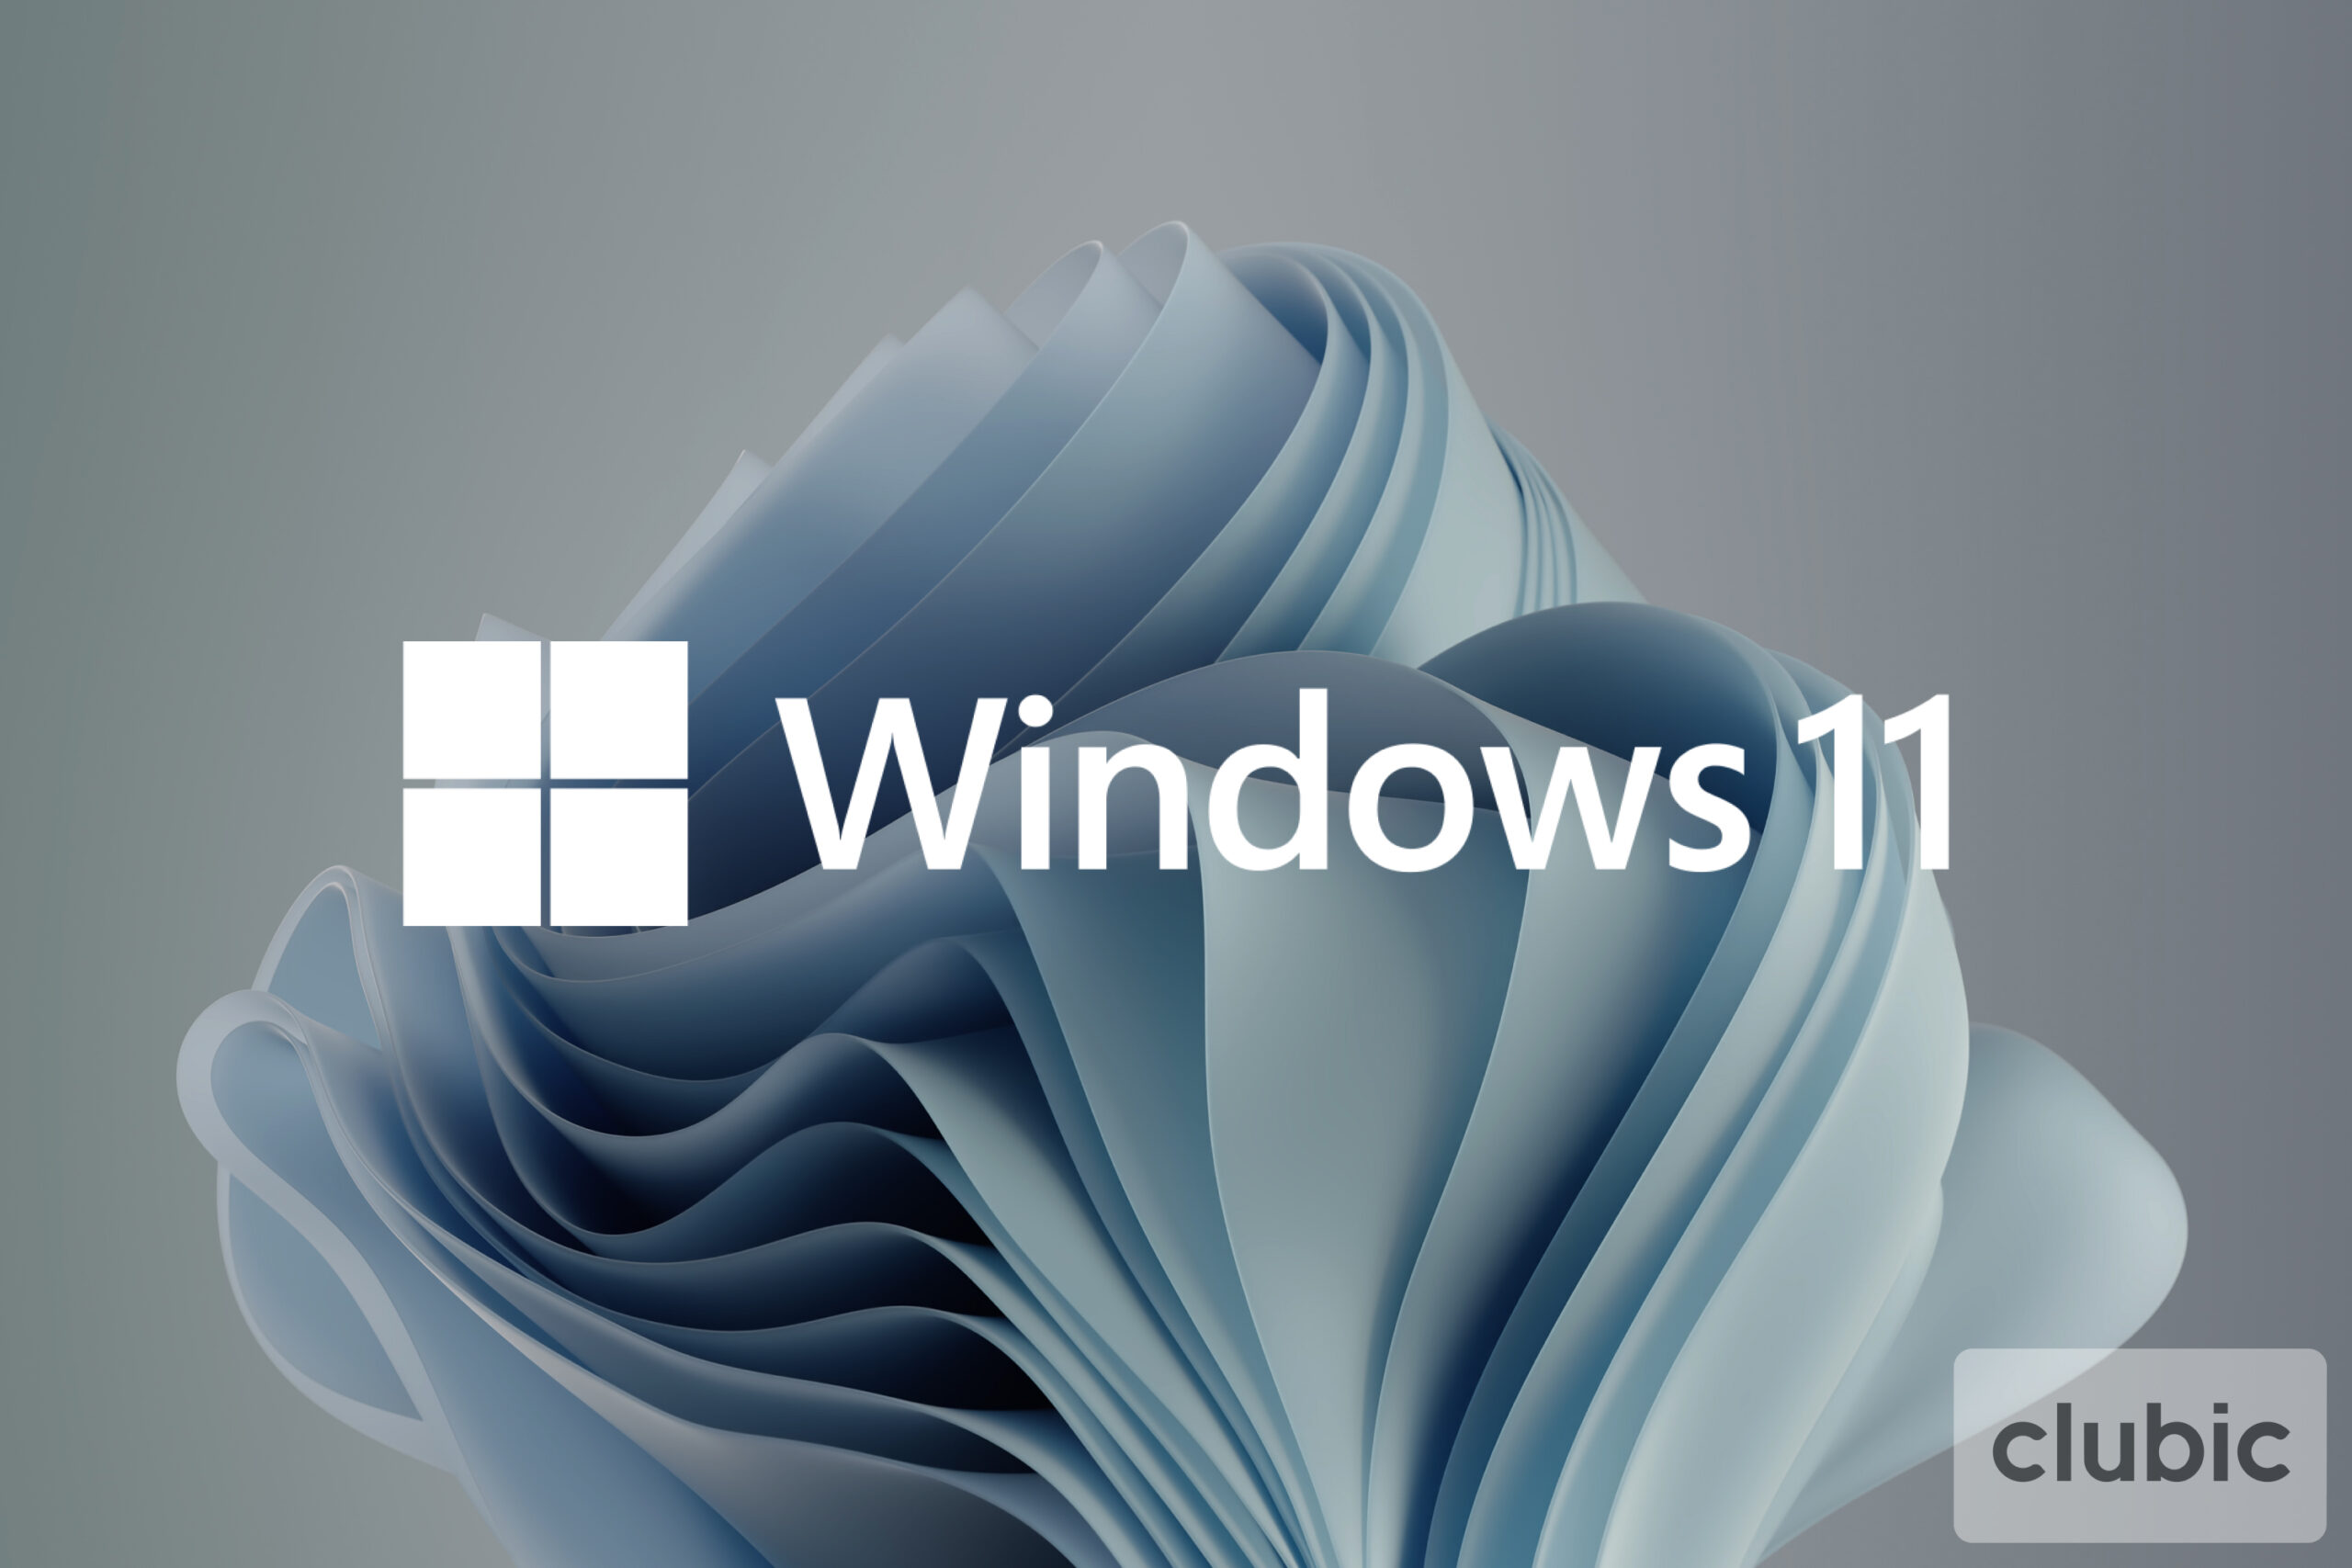 Windows 11: Linux môžete jednoducho nainštalovať cez... Microsoft Store 90